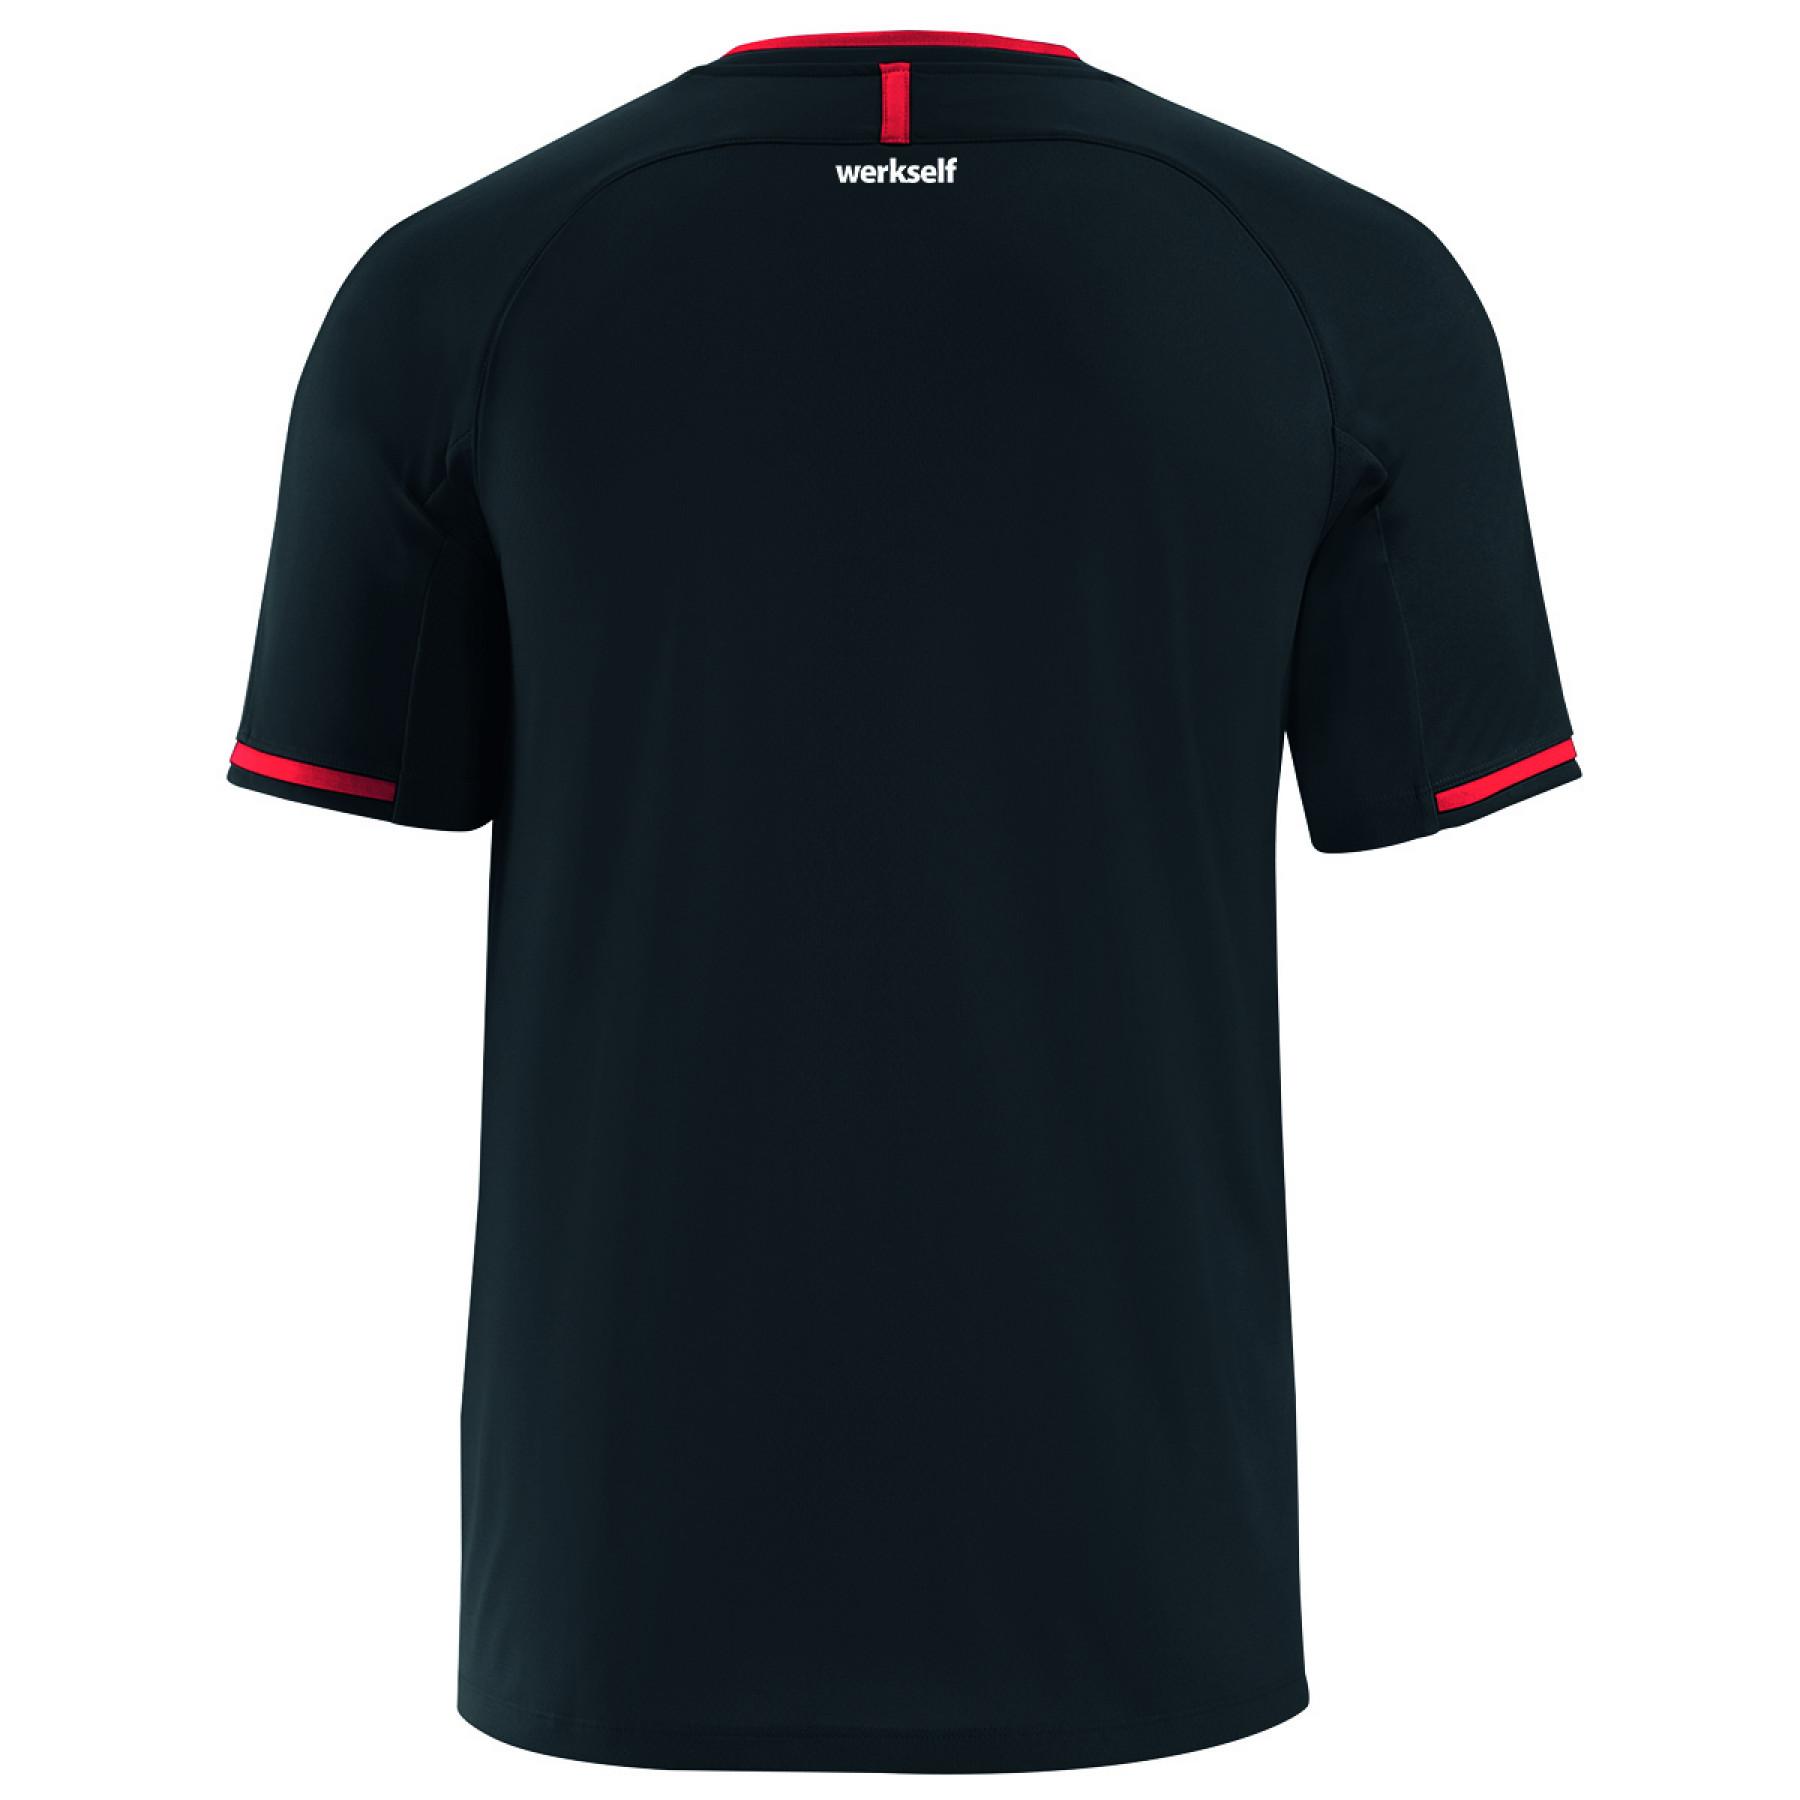 T-shirt enfant Bayer Leverkusen Prestige 2019/20